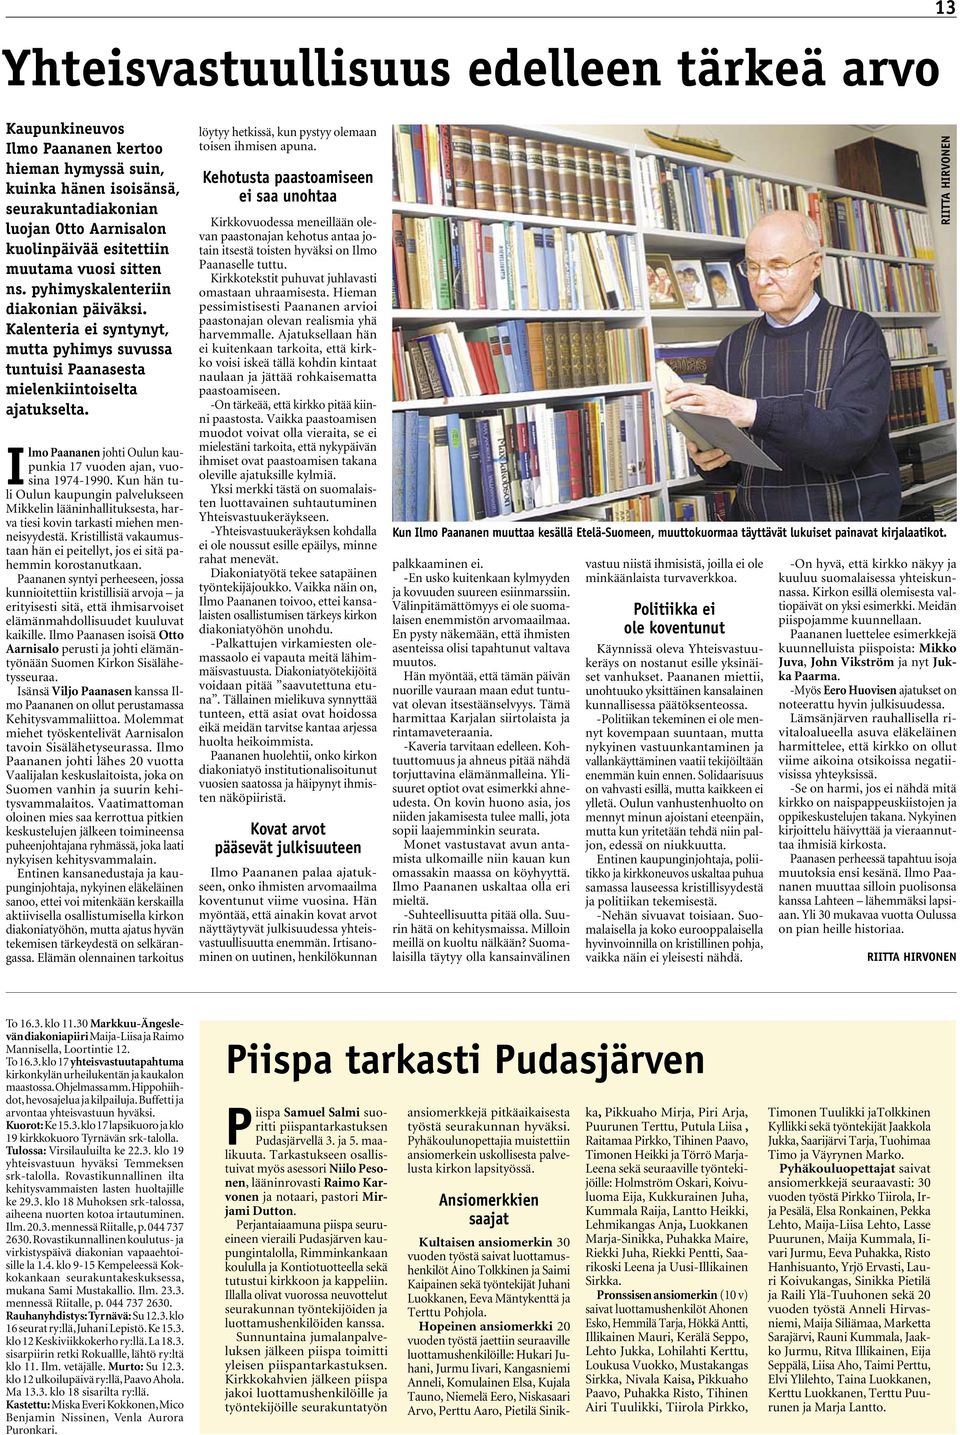 Ilmo Paananen johti Oulun kaupunkia 17 vuoden ajan, vuosina 1974-1990. Kun hän tuli Oulun kaupungin palvelukseen Mikkelin lääninhallituksesta, harva tiesi kovin tarkasti miehen menneisyydestä.